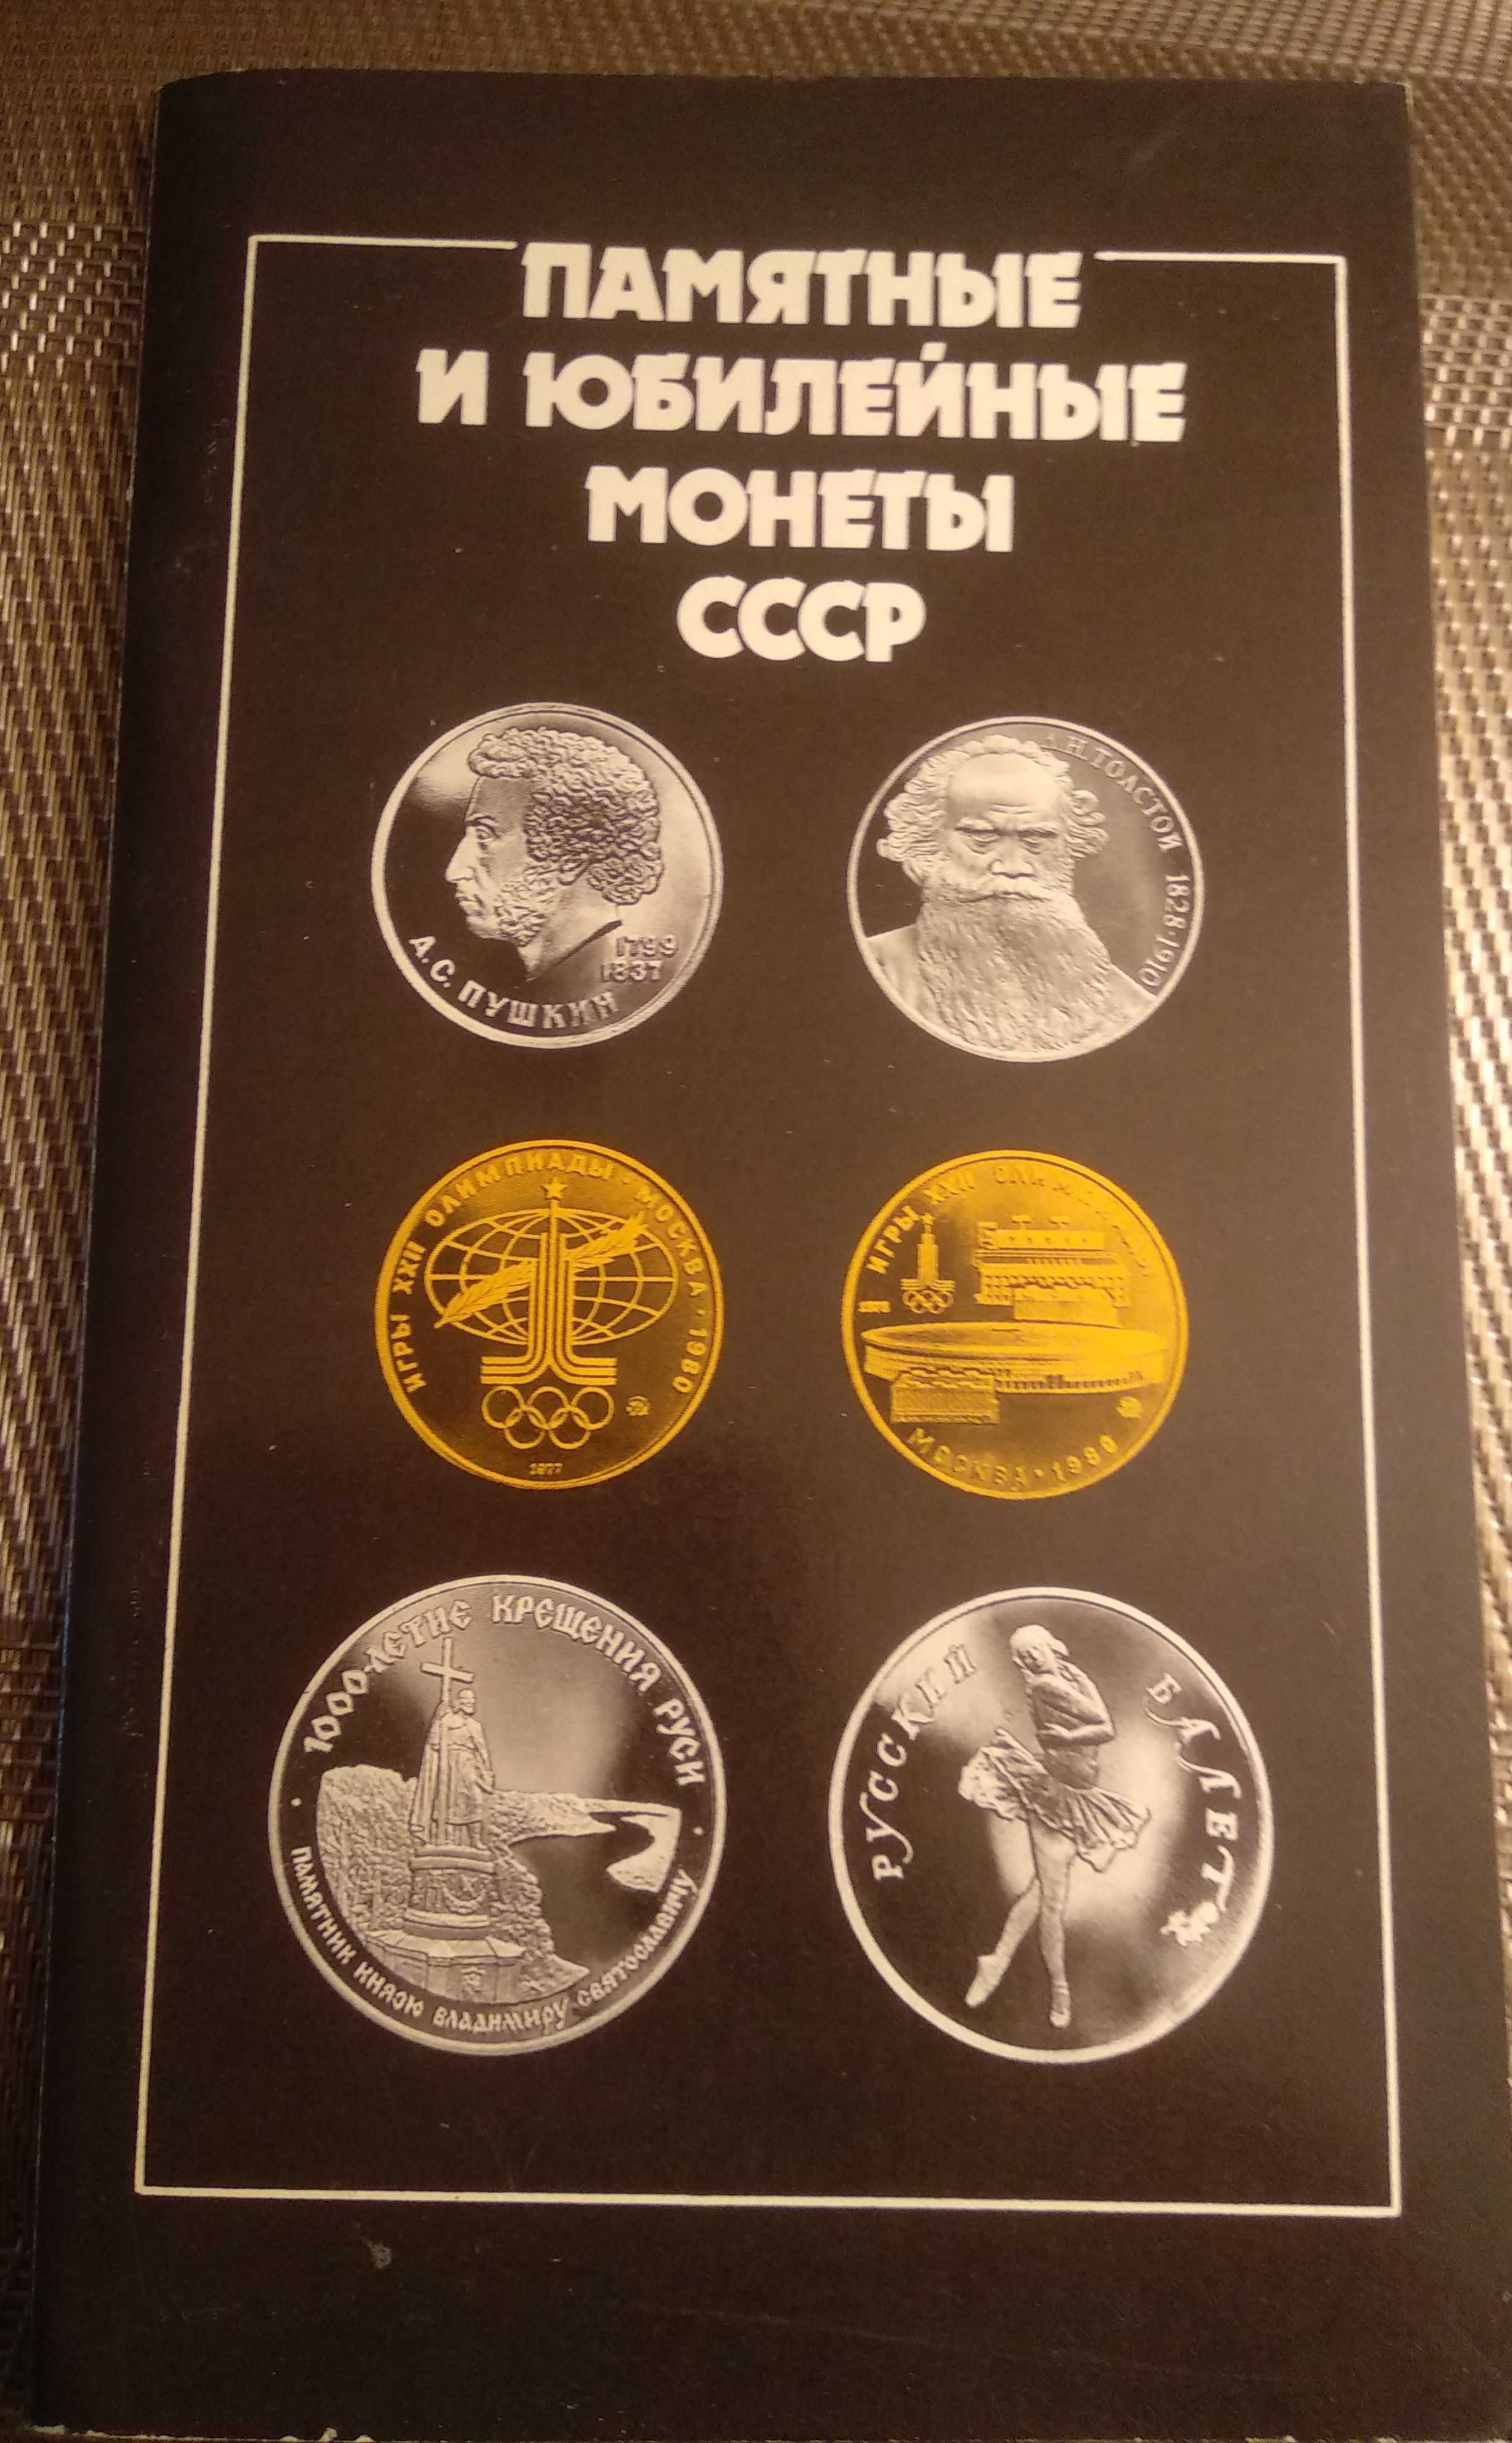 Каталог памятных и юбилейных монет СССР